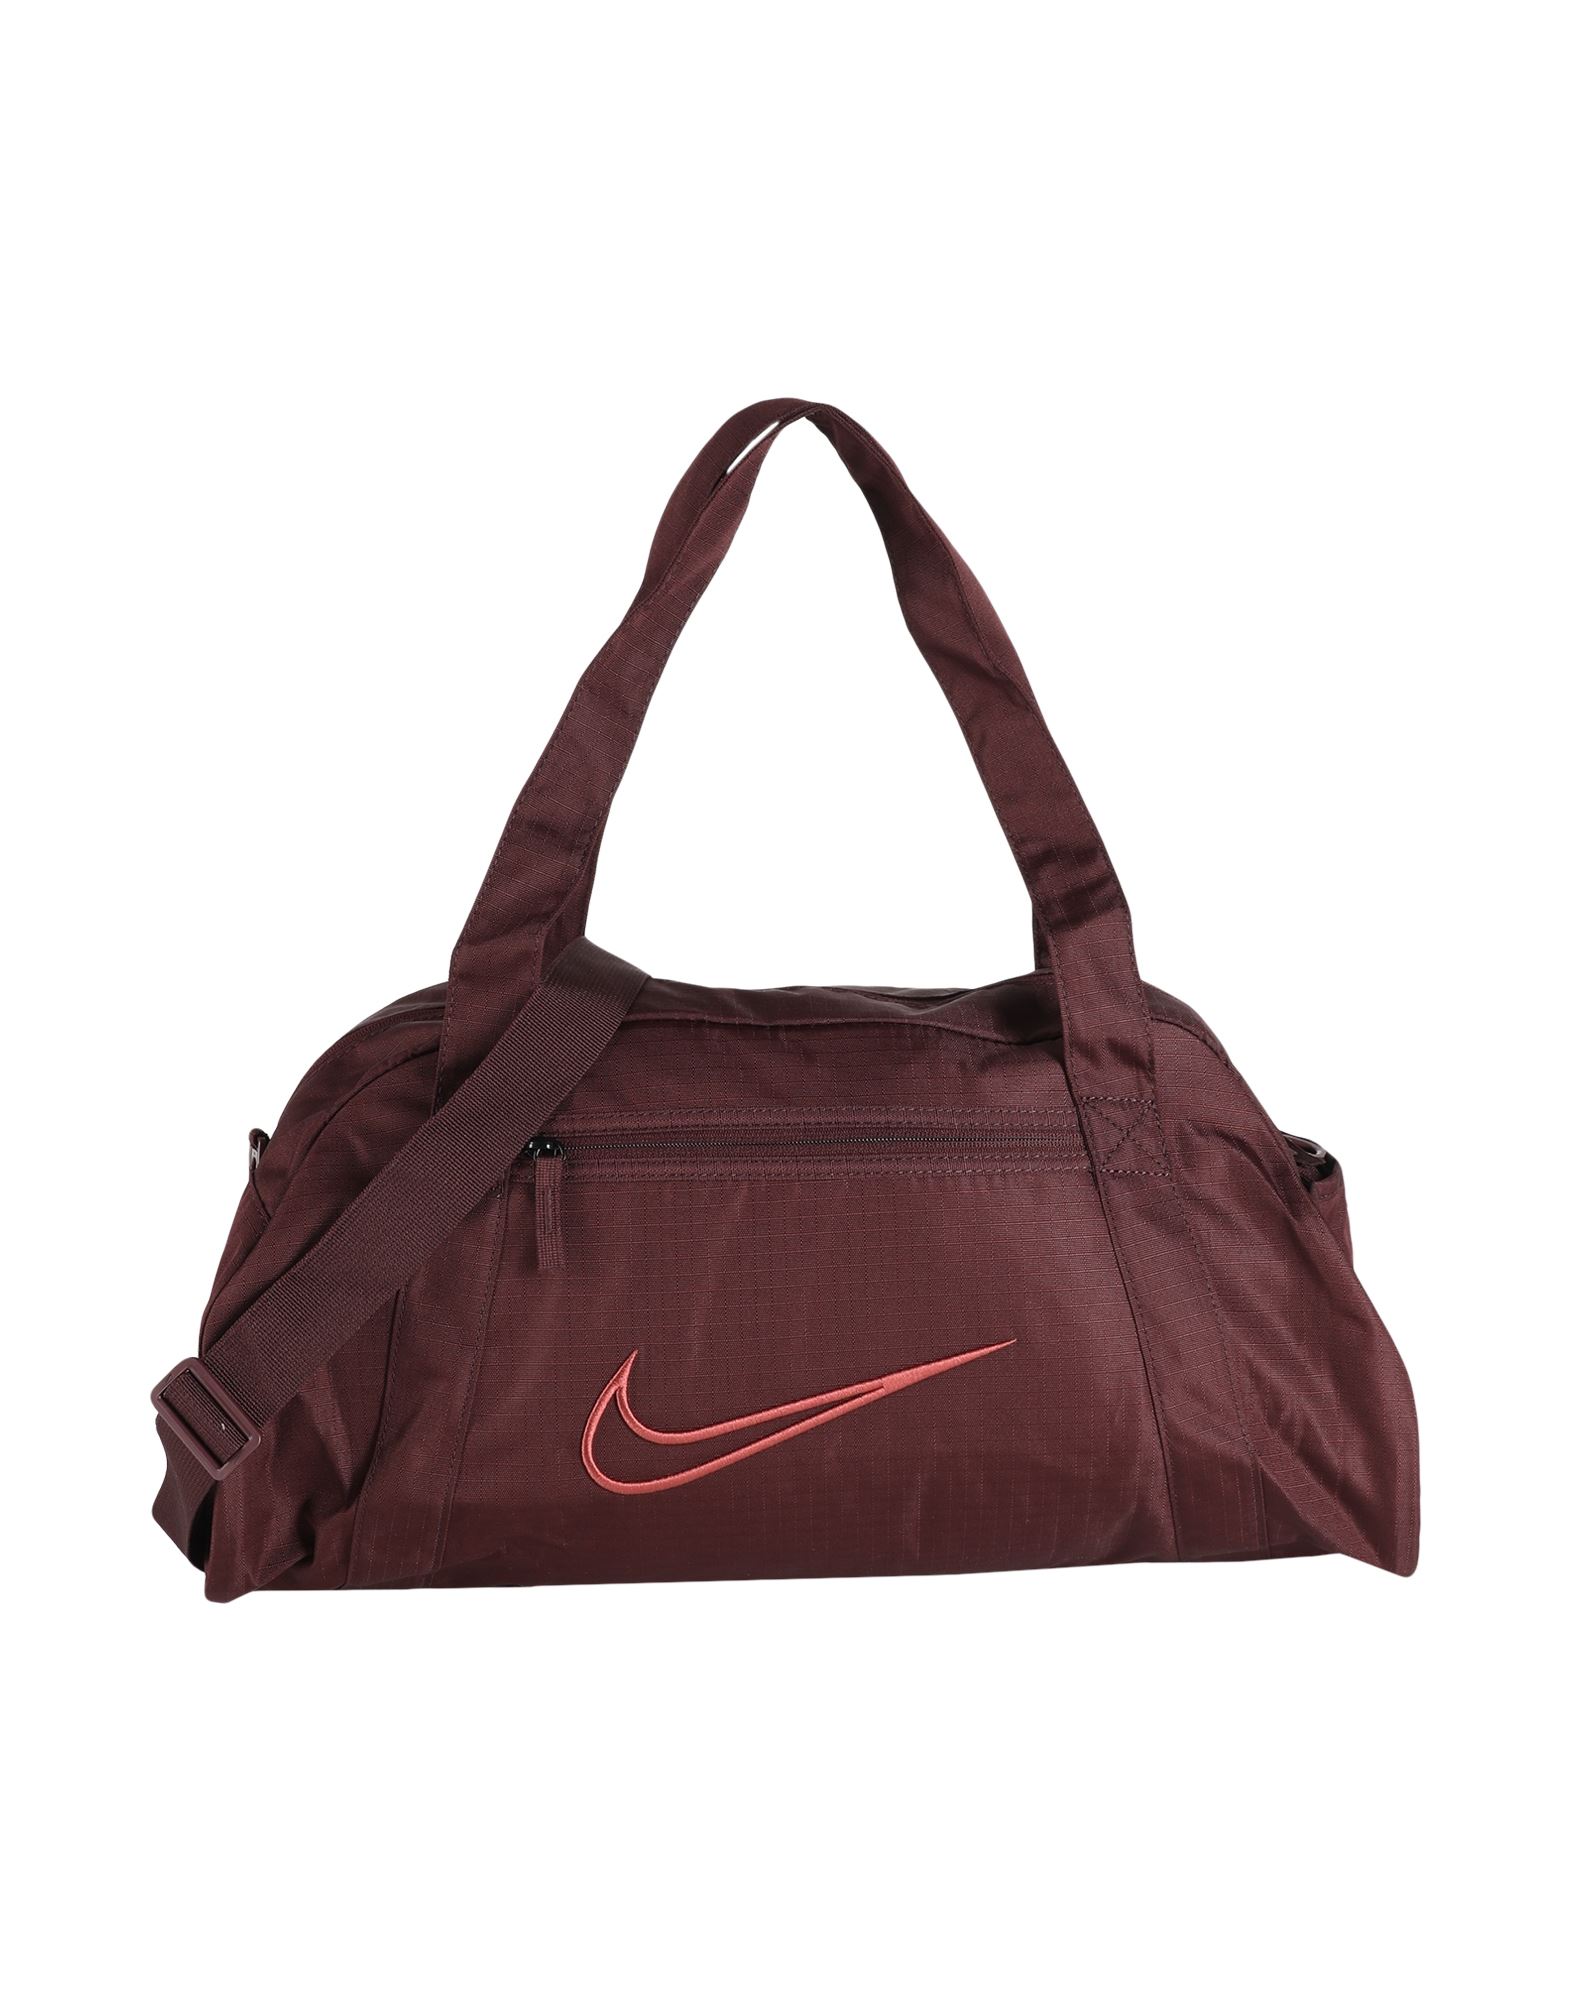 Nike Gym Club Bag In Burgundy